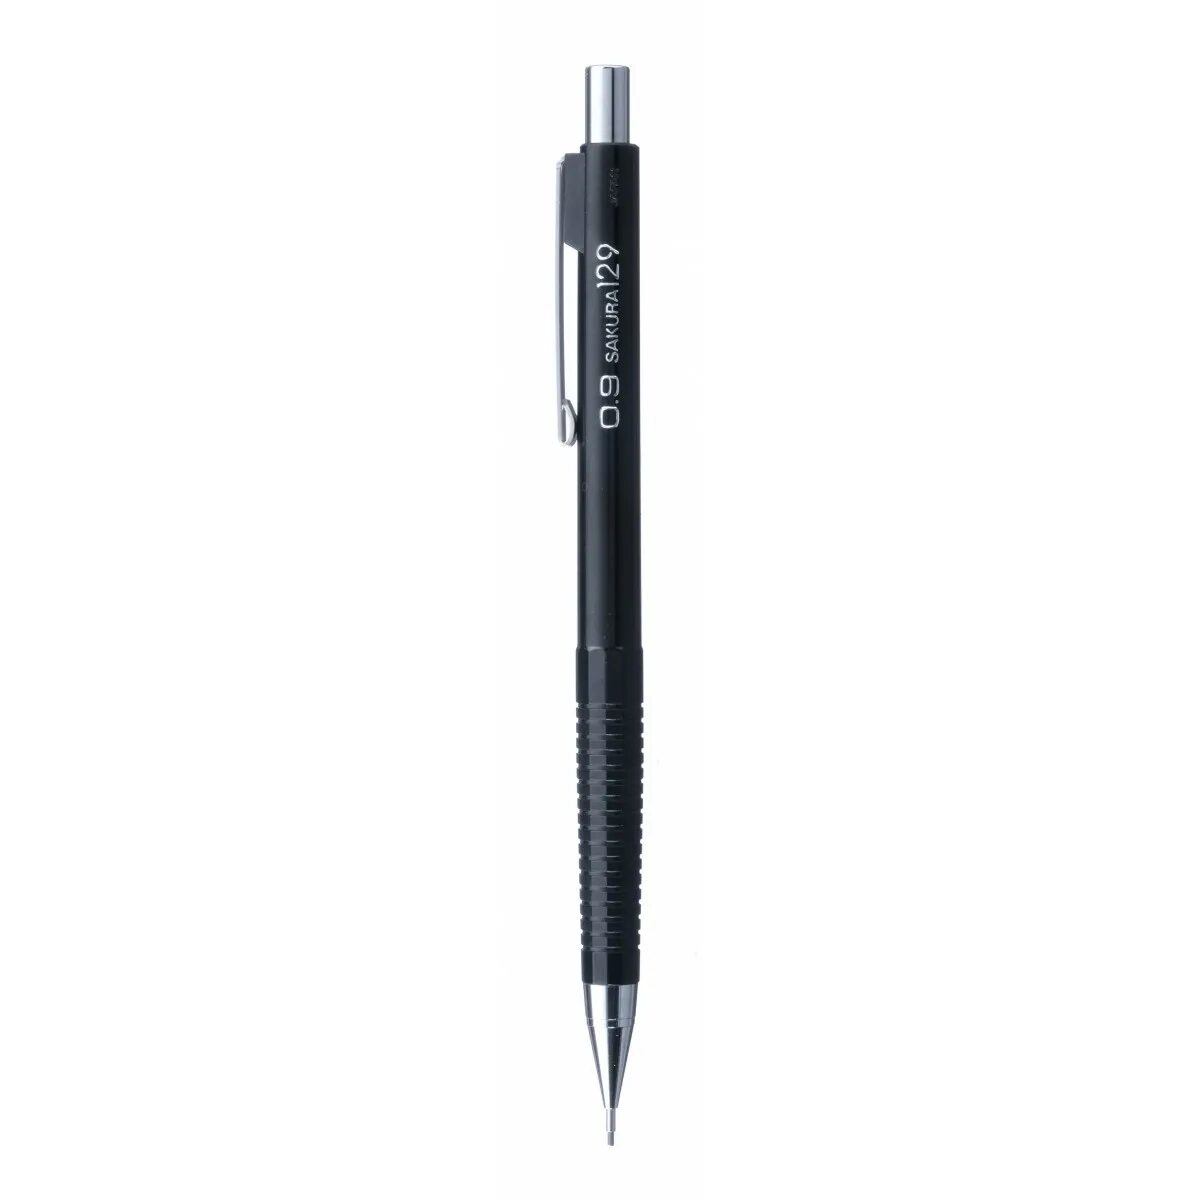 Механический карандаш Faber Castell. Карандаш 0.7 мм. Стержни для карандашей 0.5 мм. Ручка+карандаш 0,7 al 4842. Карандаш 0.7